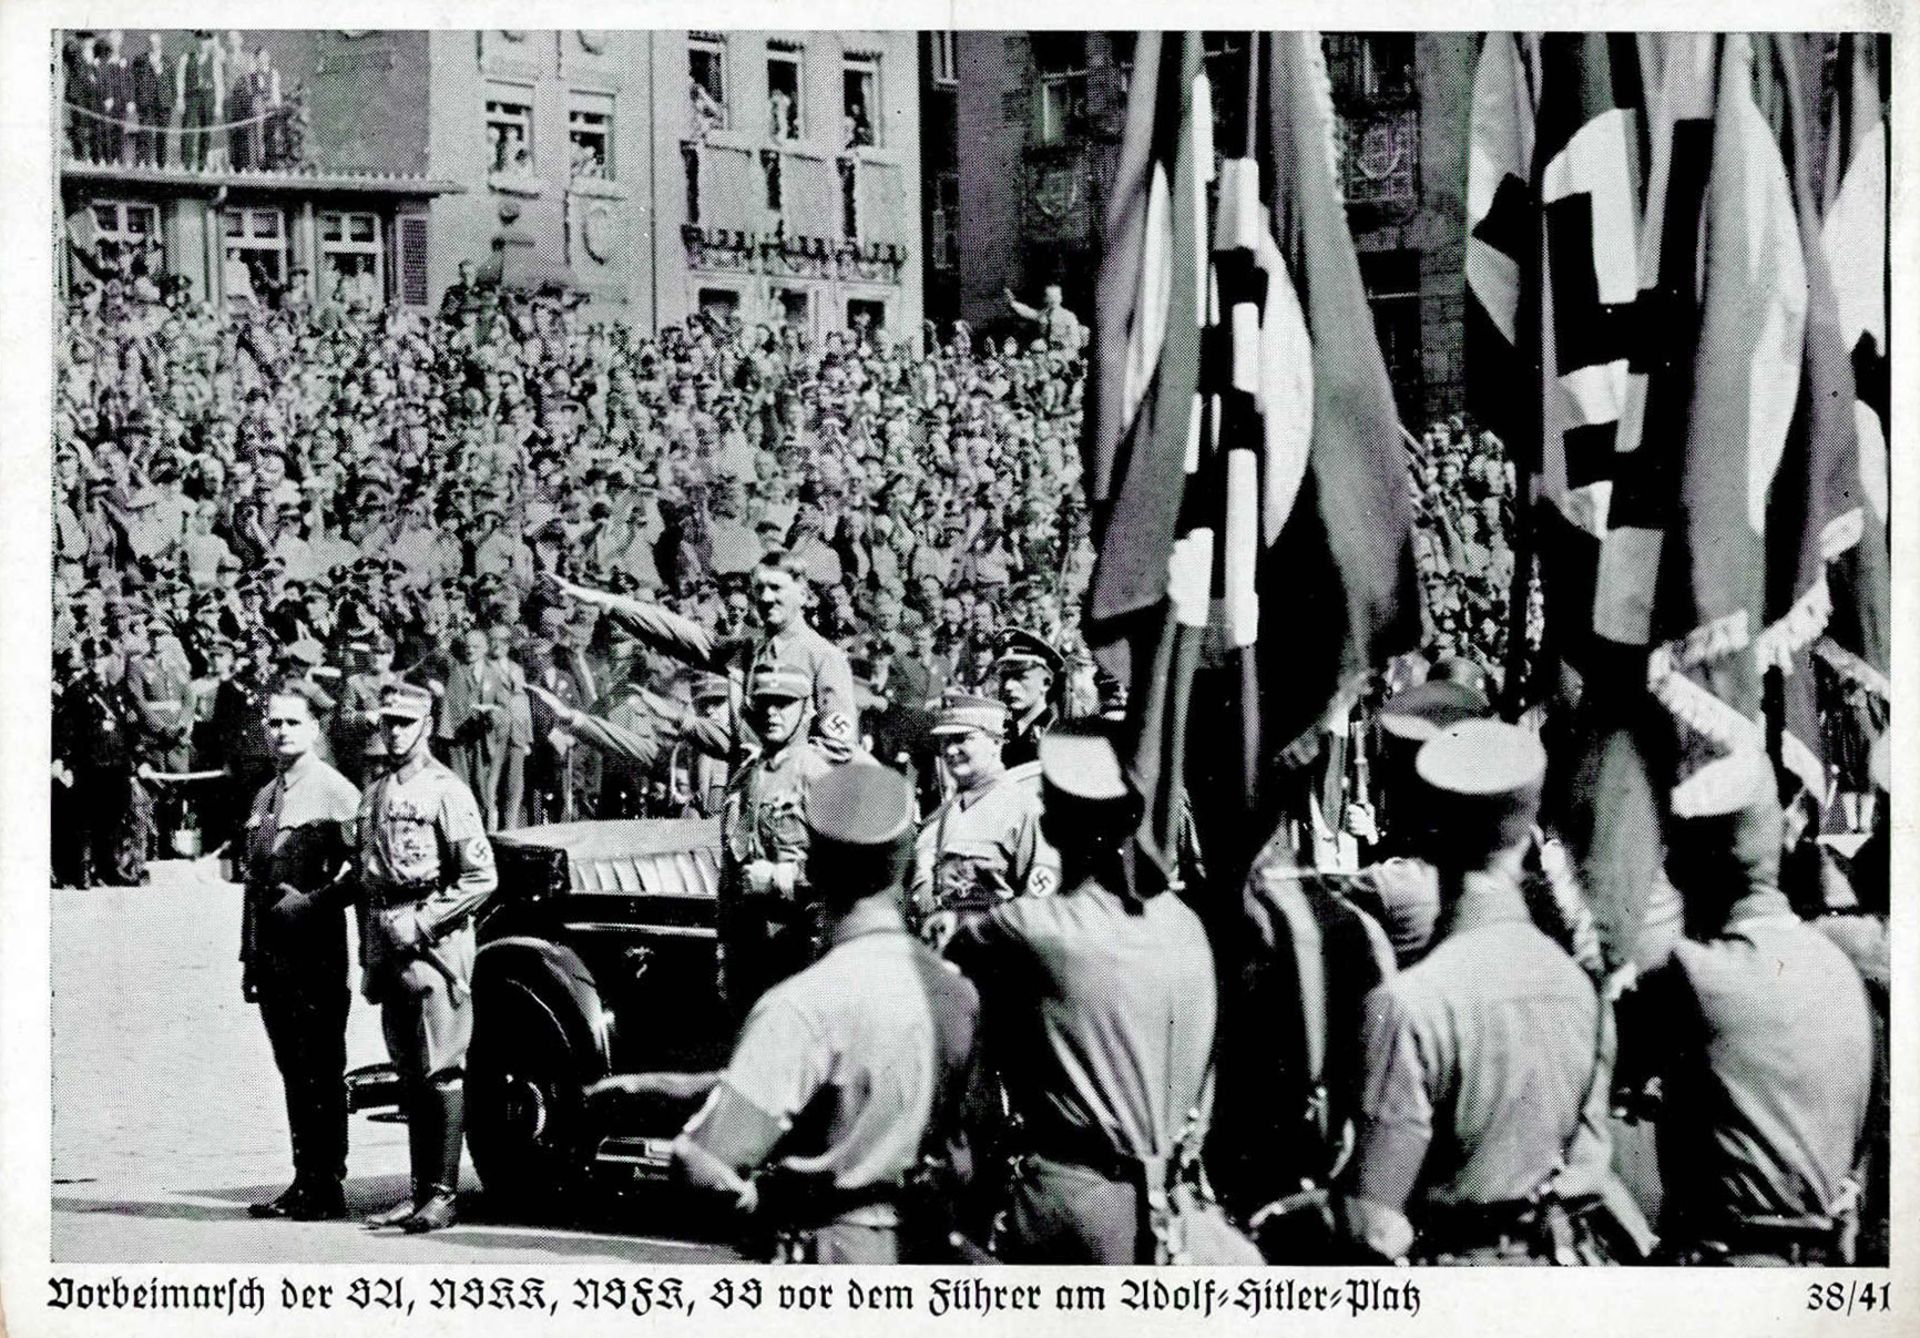 REICHSPARTEITAG NÜRNBERG WK II - Zerreiss 38/41 Vorbeimarsch der SA NSKK NSFK SS vor dem Führer I